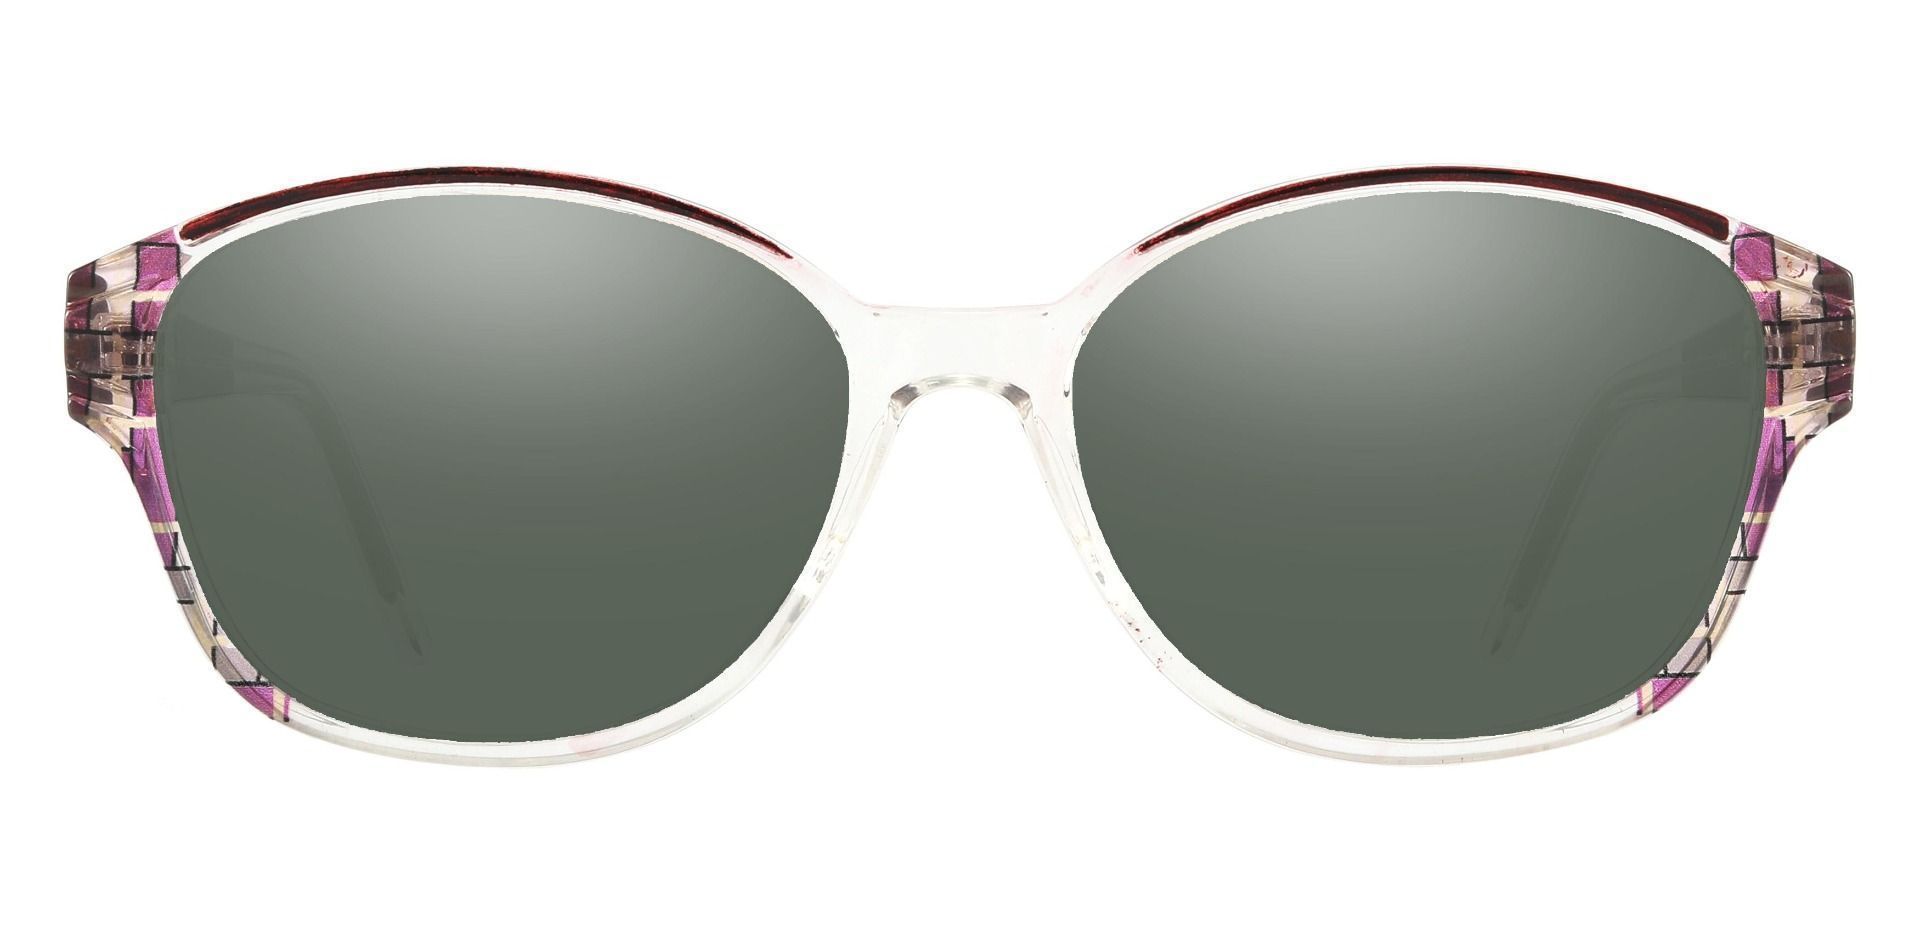 Moira Oval Progressive Sunglasses - Pink Frame With Green Lenses